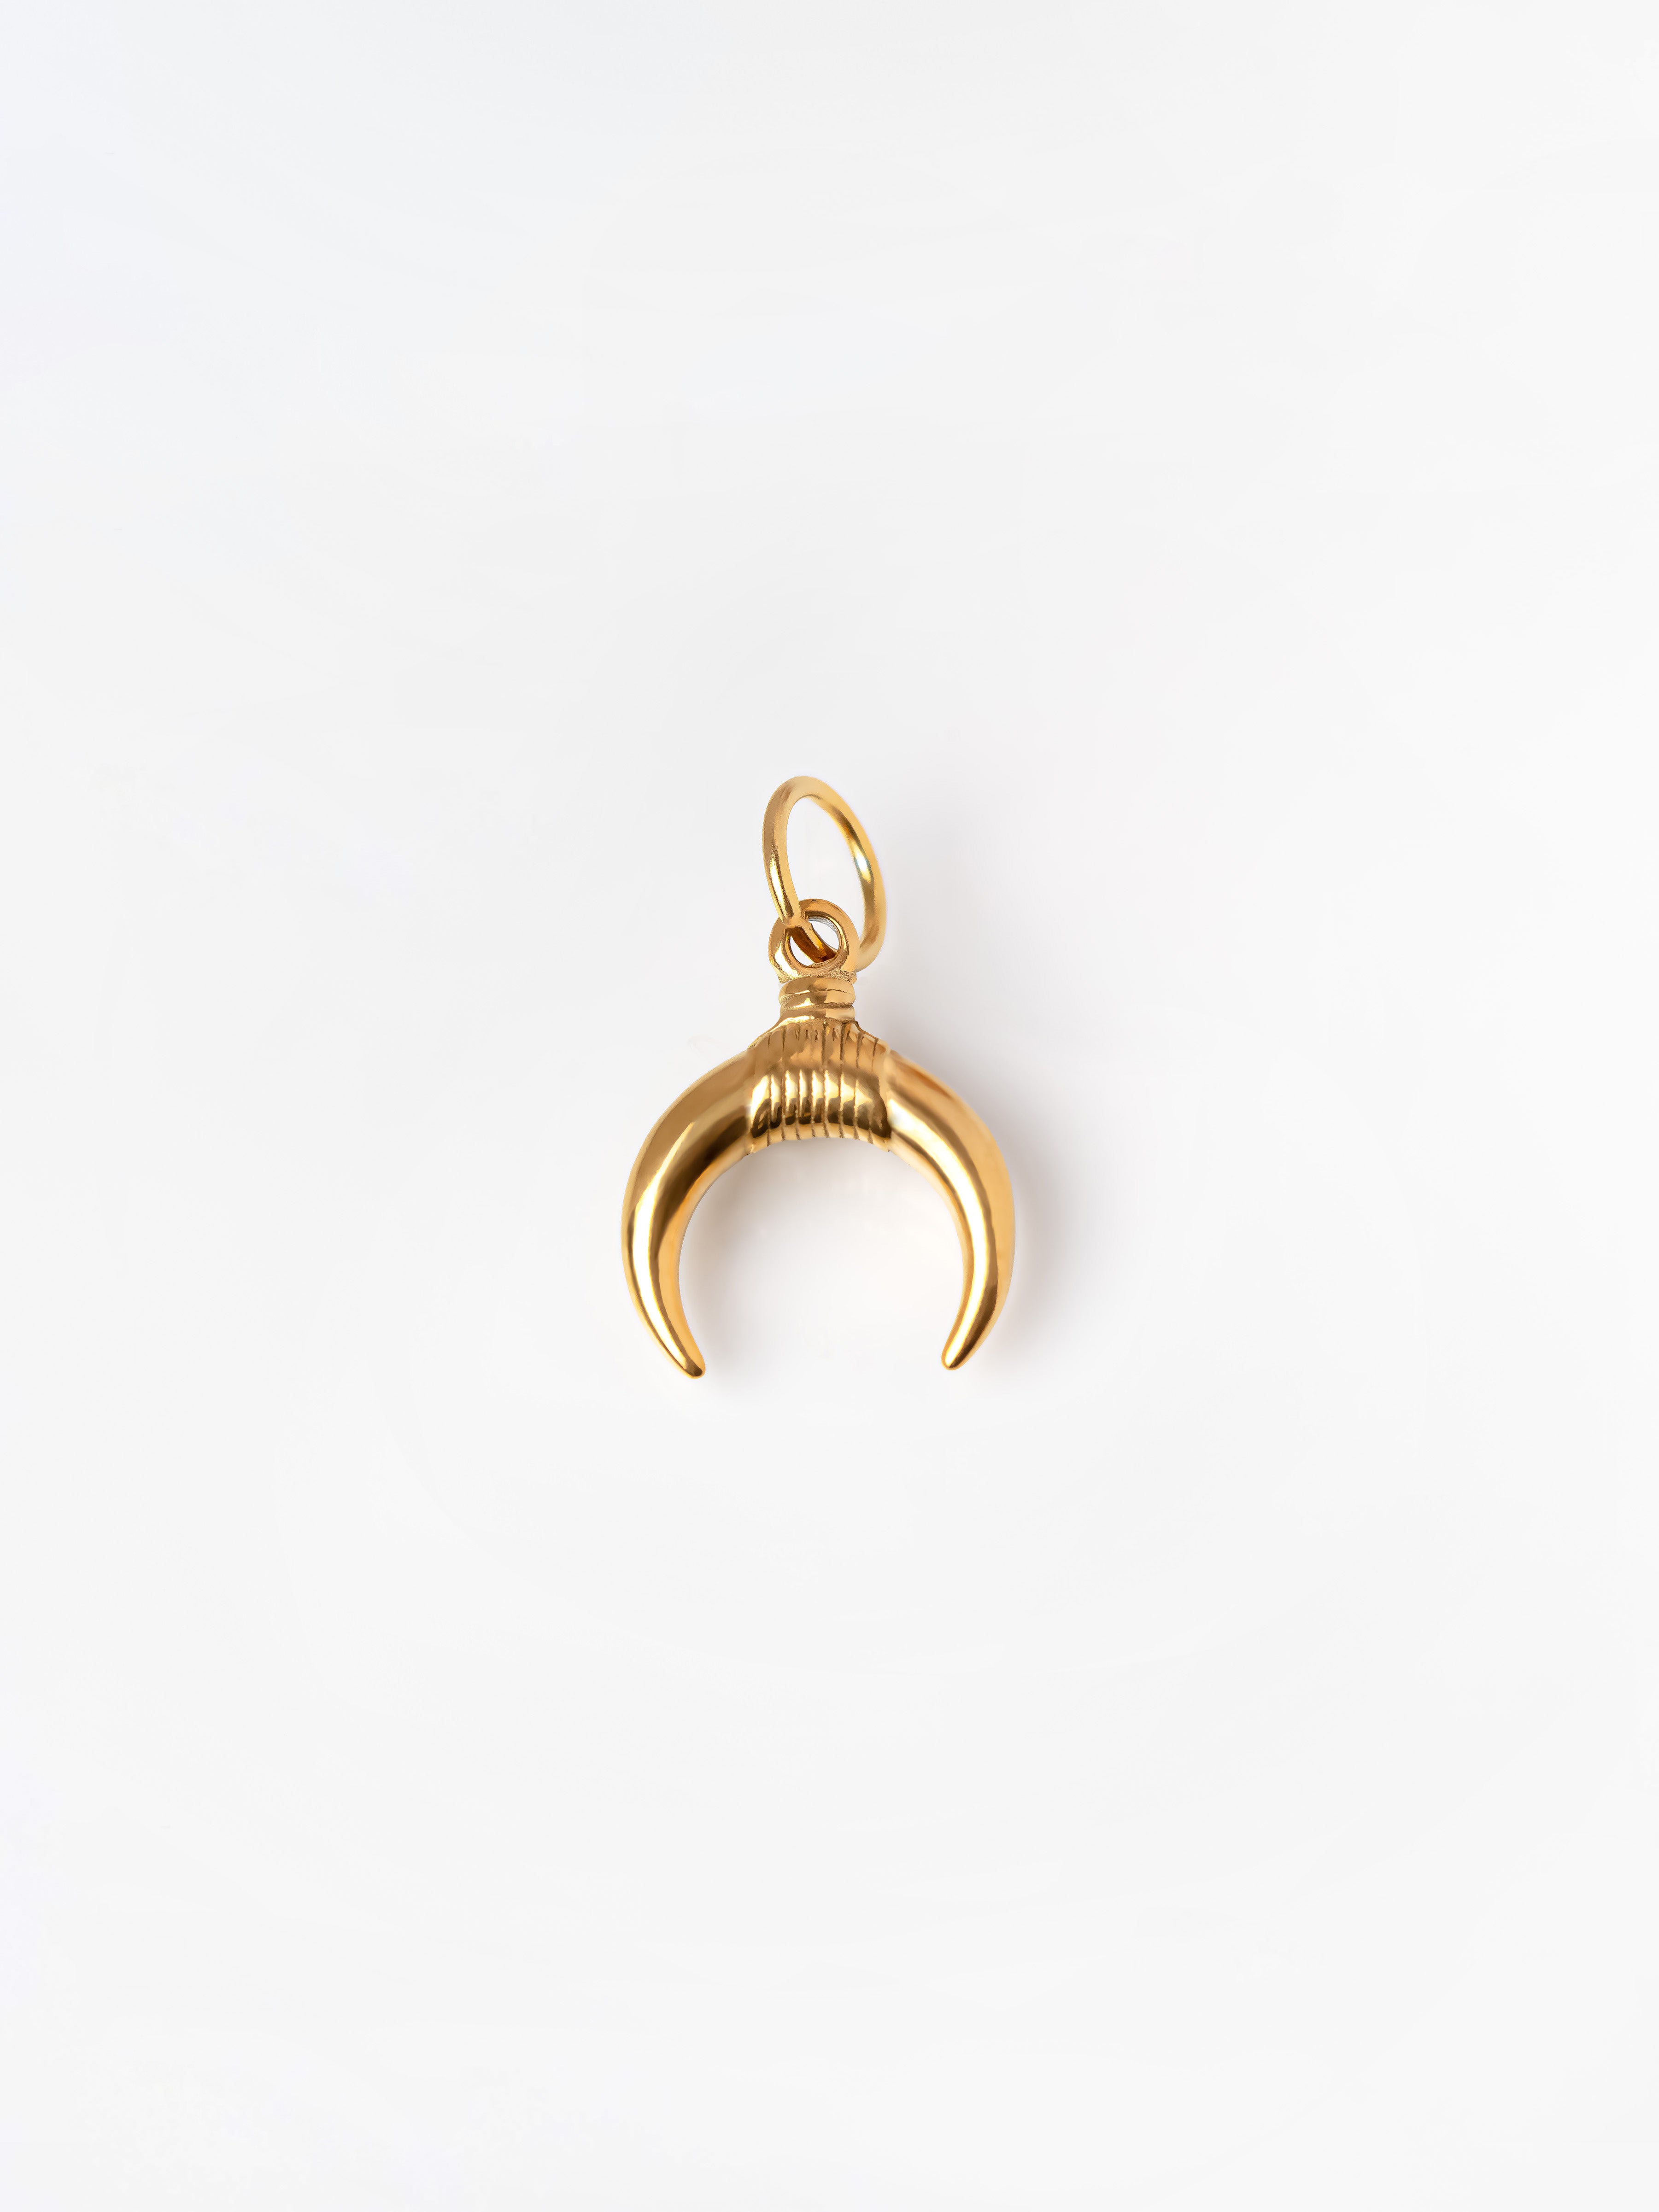 Gold Tiny Bull Horn Pendant / Charm